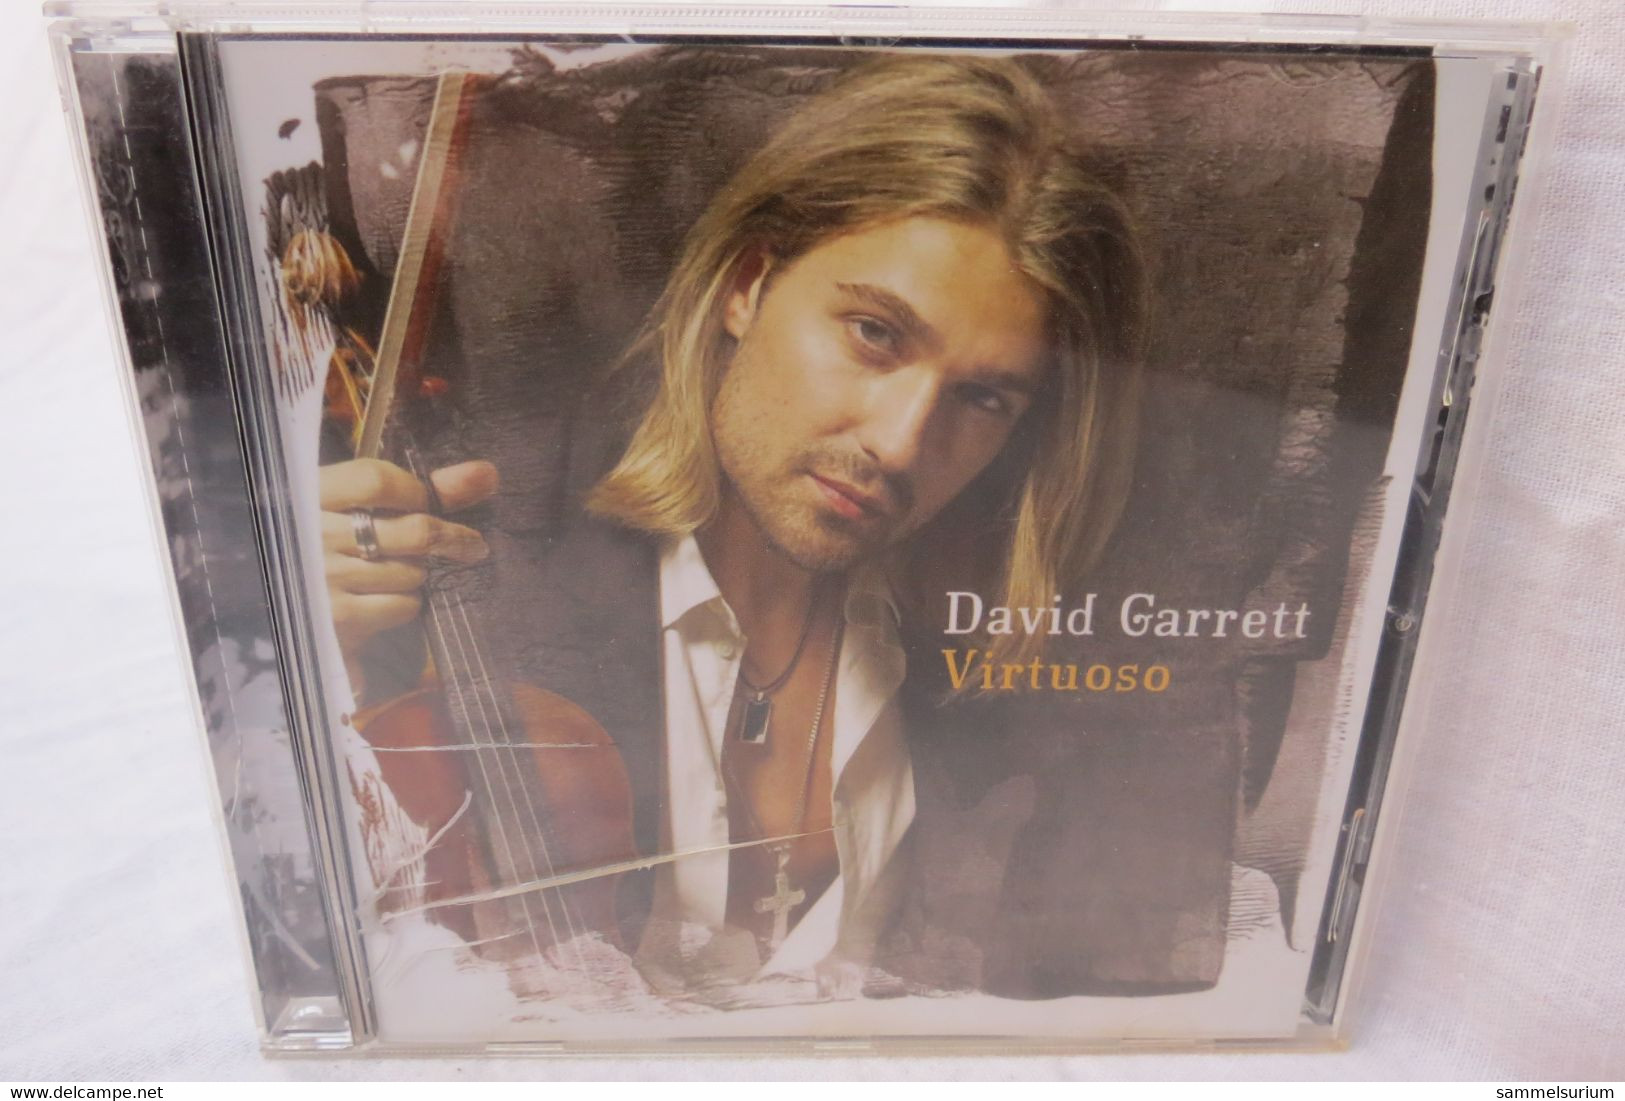 CD "David Garrett" Virtuoso - Instrumentaal